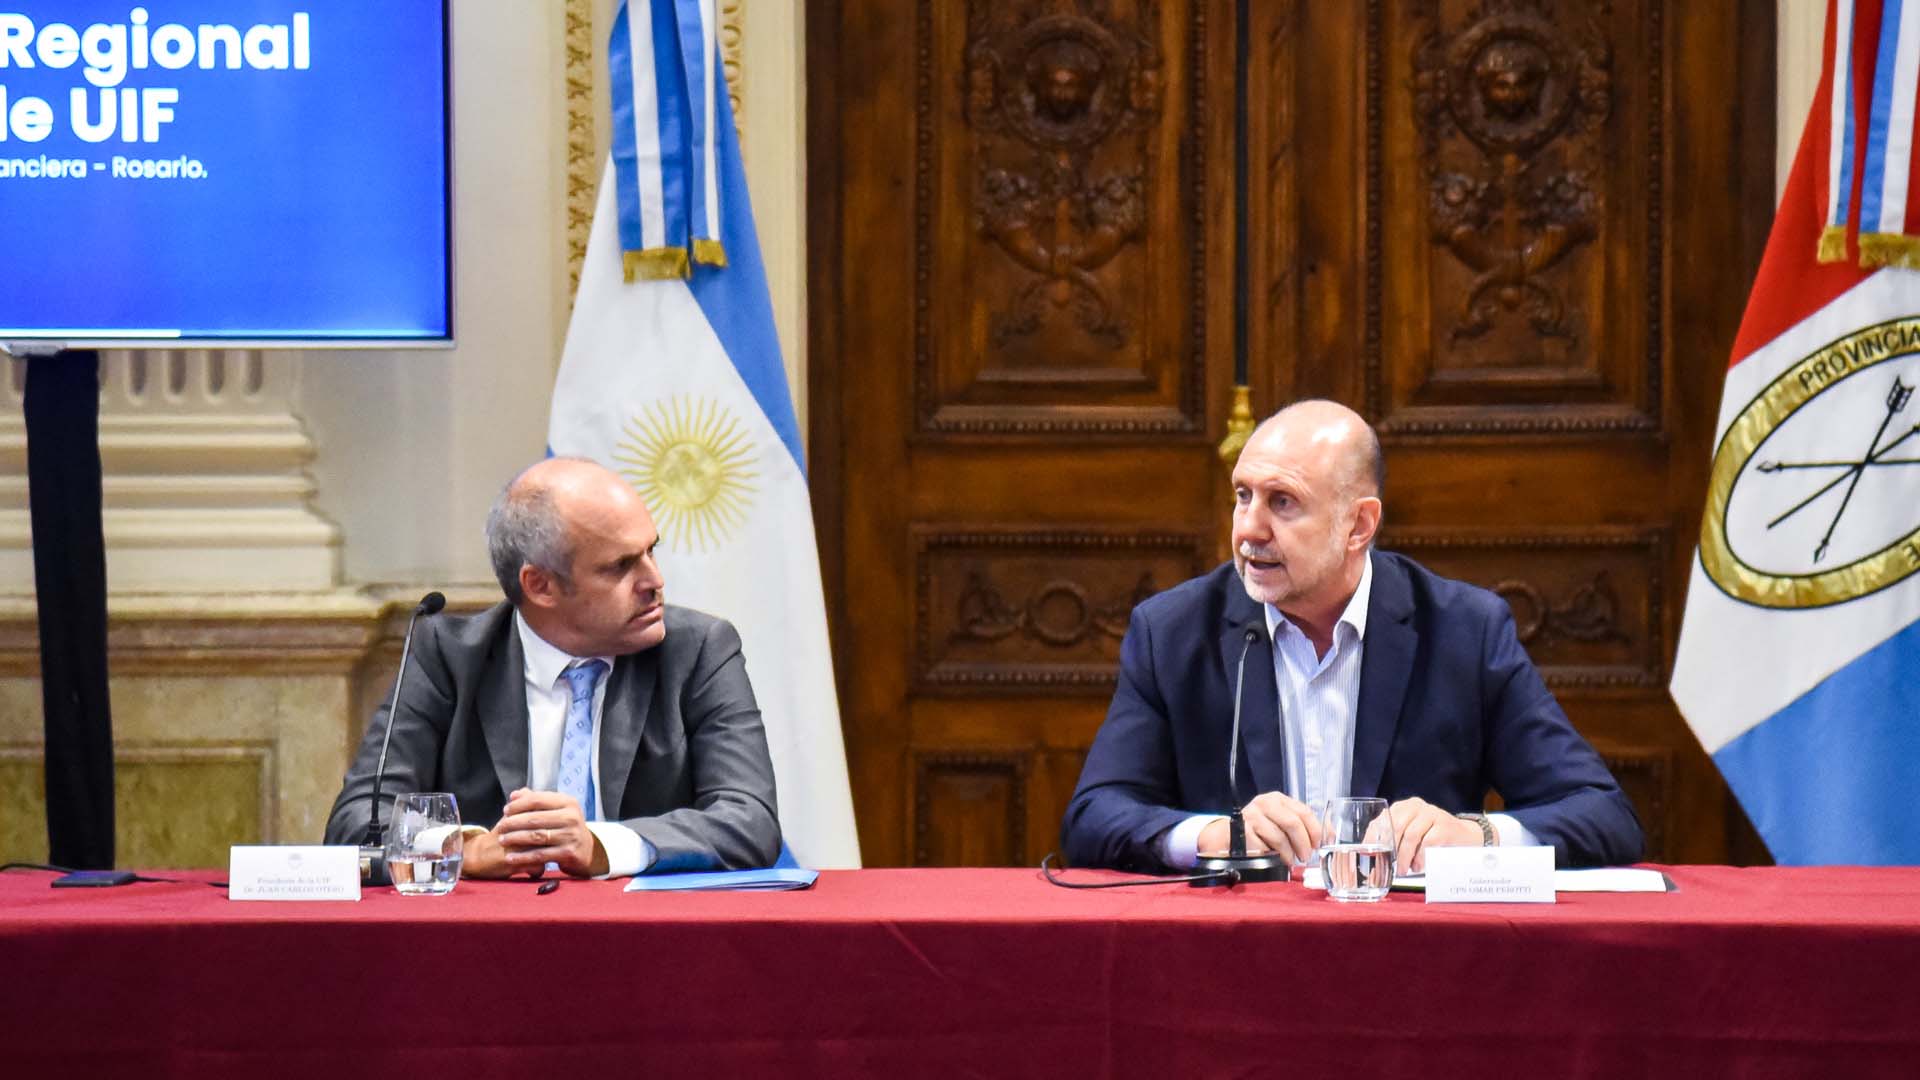 La oficina de la UIF en Rosario tardará meses en estar operativa y tendrá algún impacto recién en el próximo gobierno